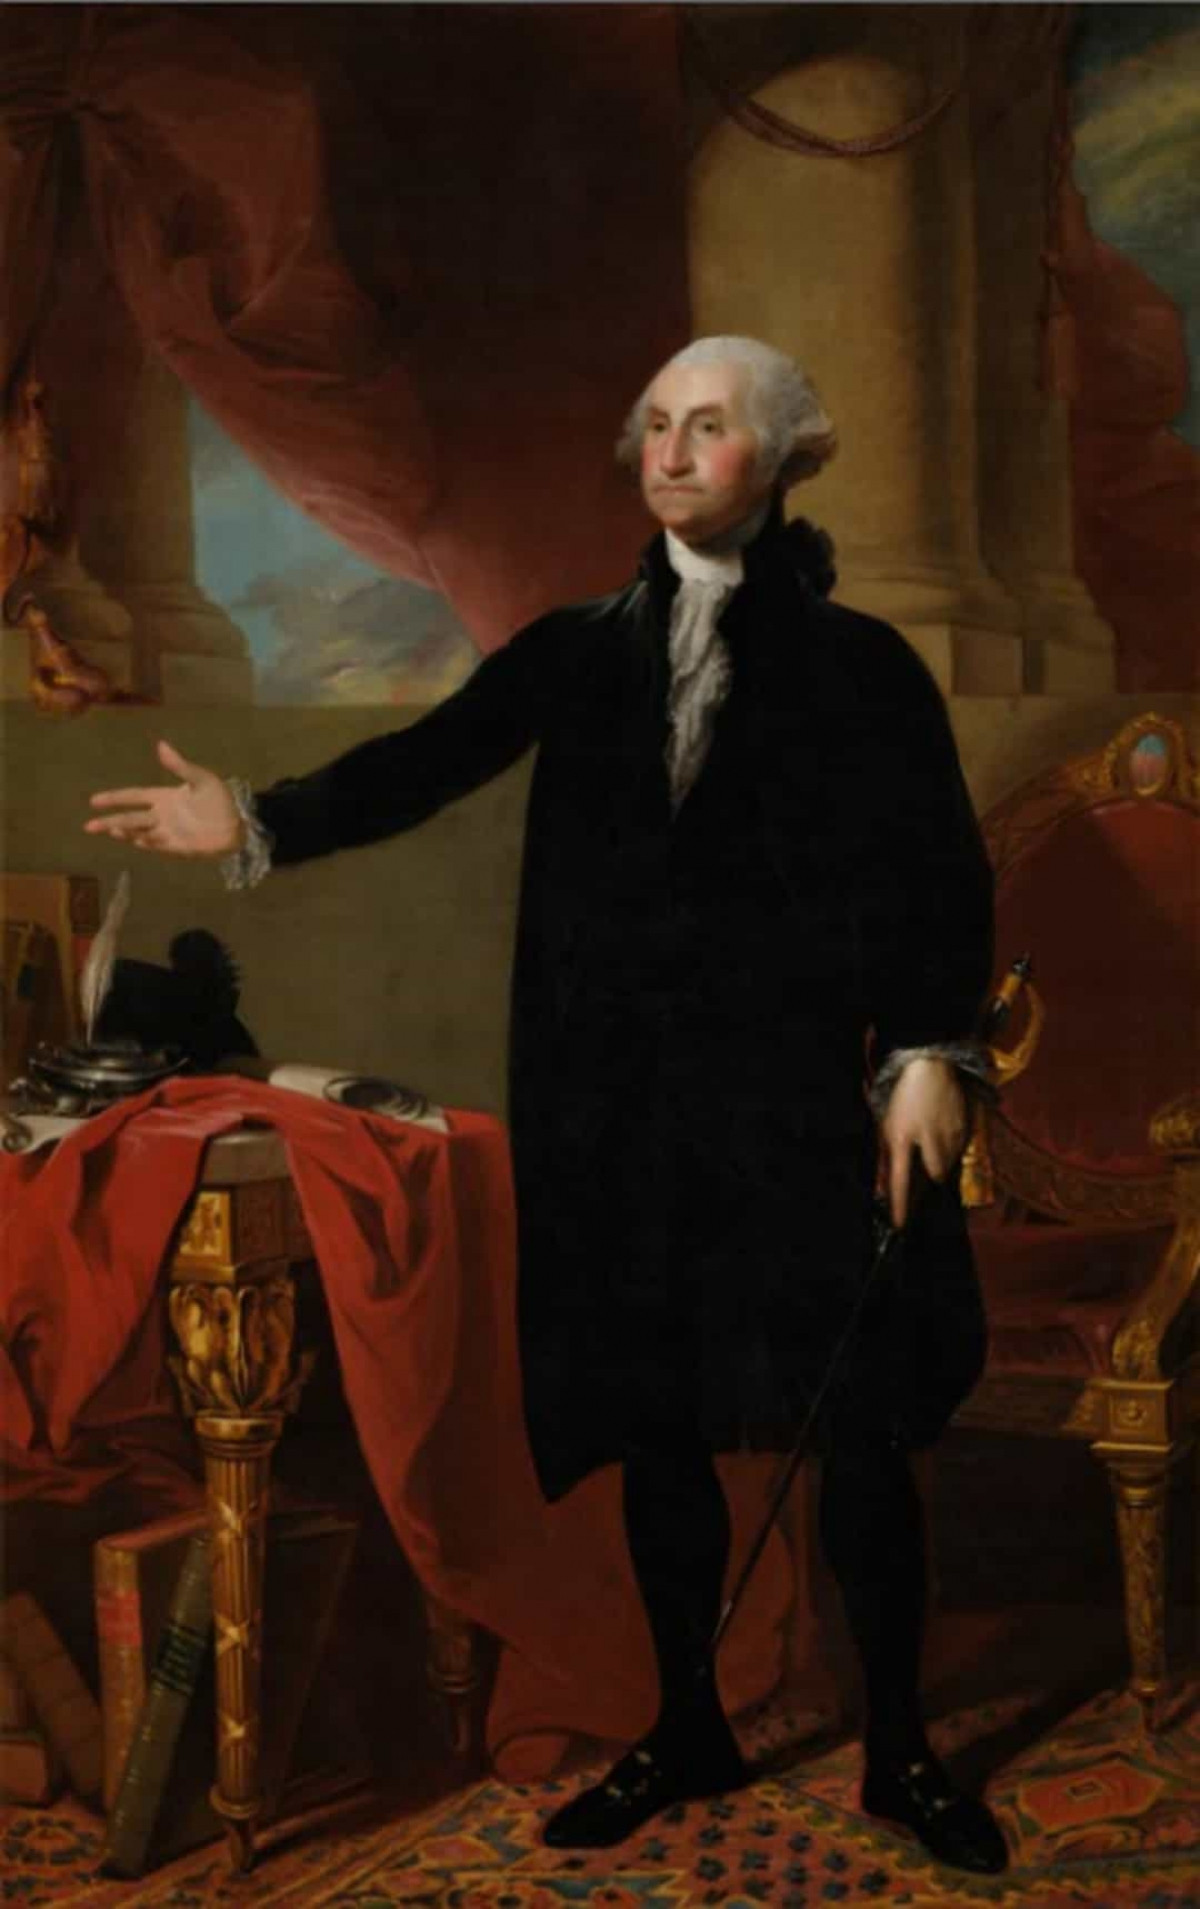 Năm 1814, quân đội Anh đốt cháy Nhà Trắng và chỉ có một bức tranh duy nhất của cựu Tổng thống George Washington được giữ lại bởi cựu Đệ nhất phu nhân Dolley Madison.